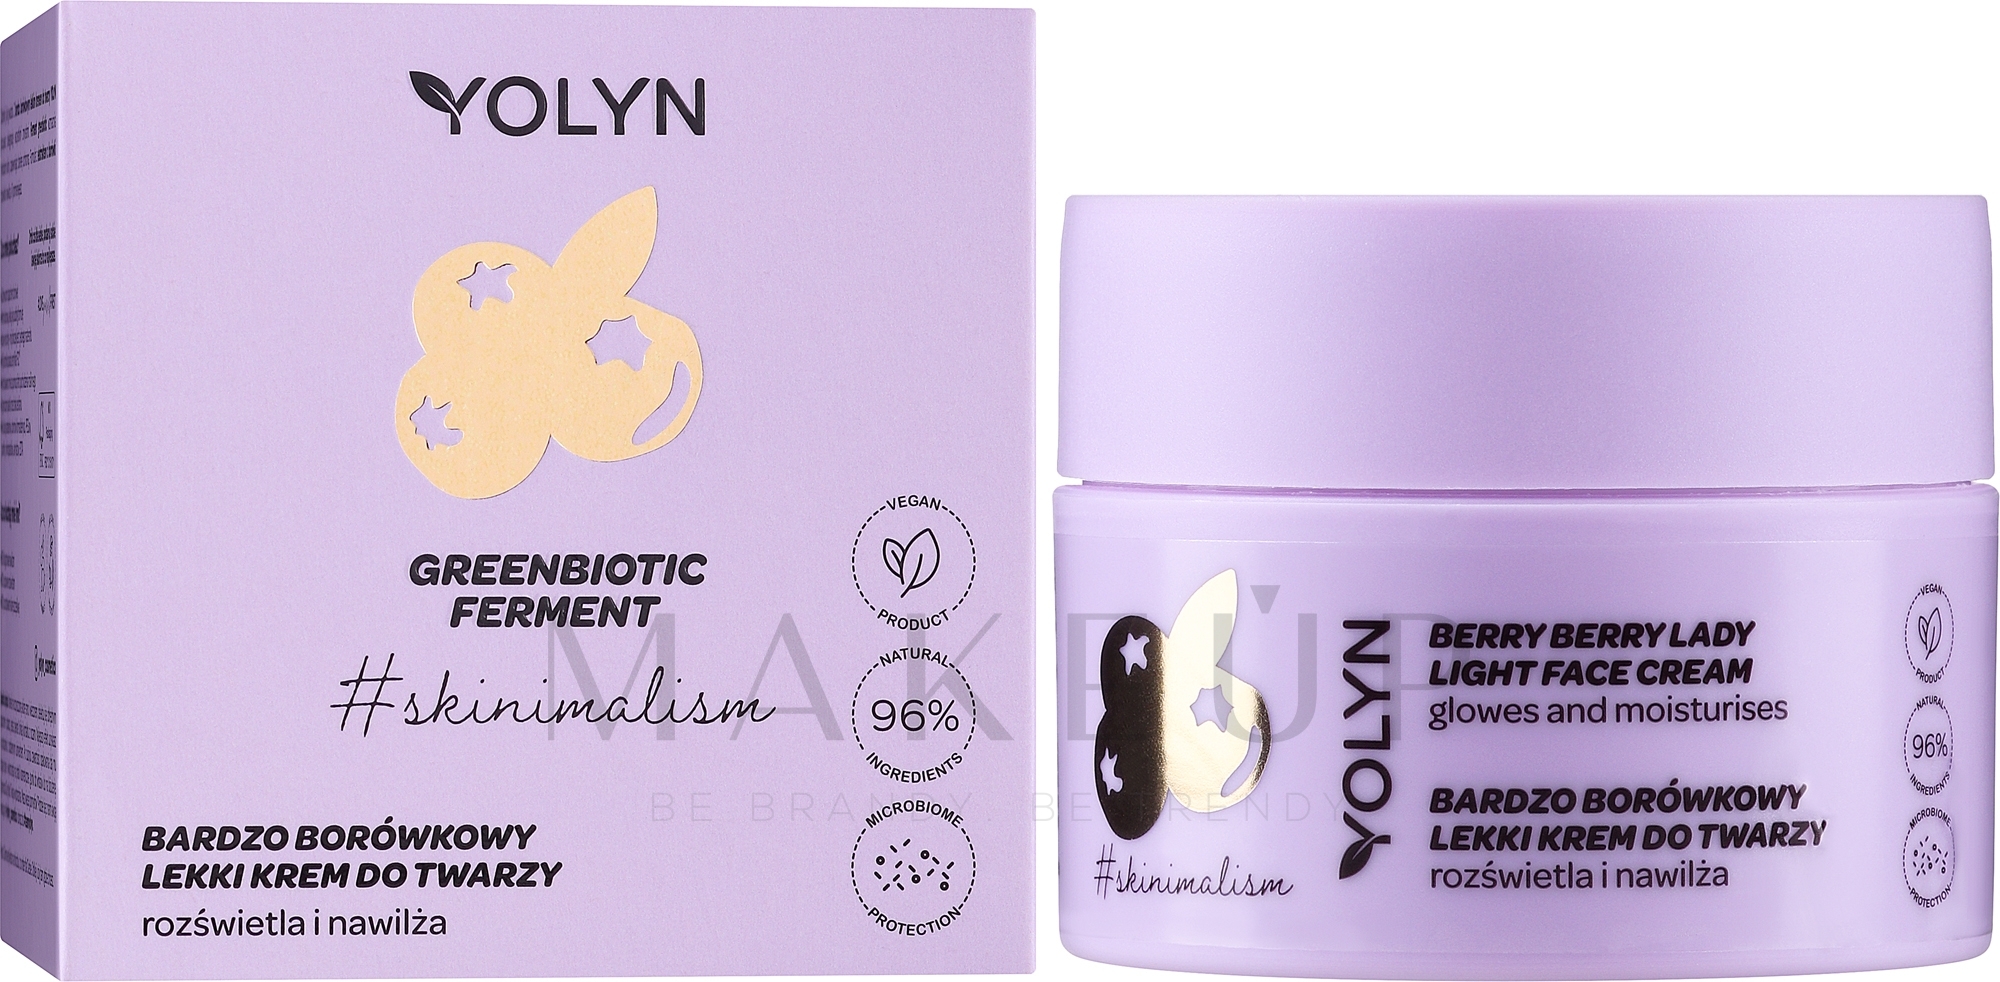 Aufhellende Gesichtscreme mit Blaubeere - Yolyn Berry Berry Lady Light Face Cream — Bild 50 ml